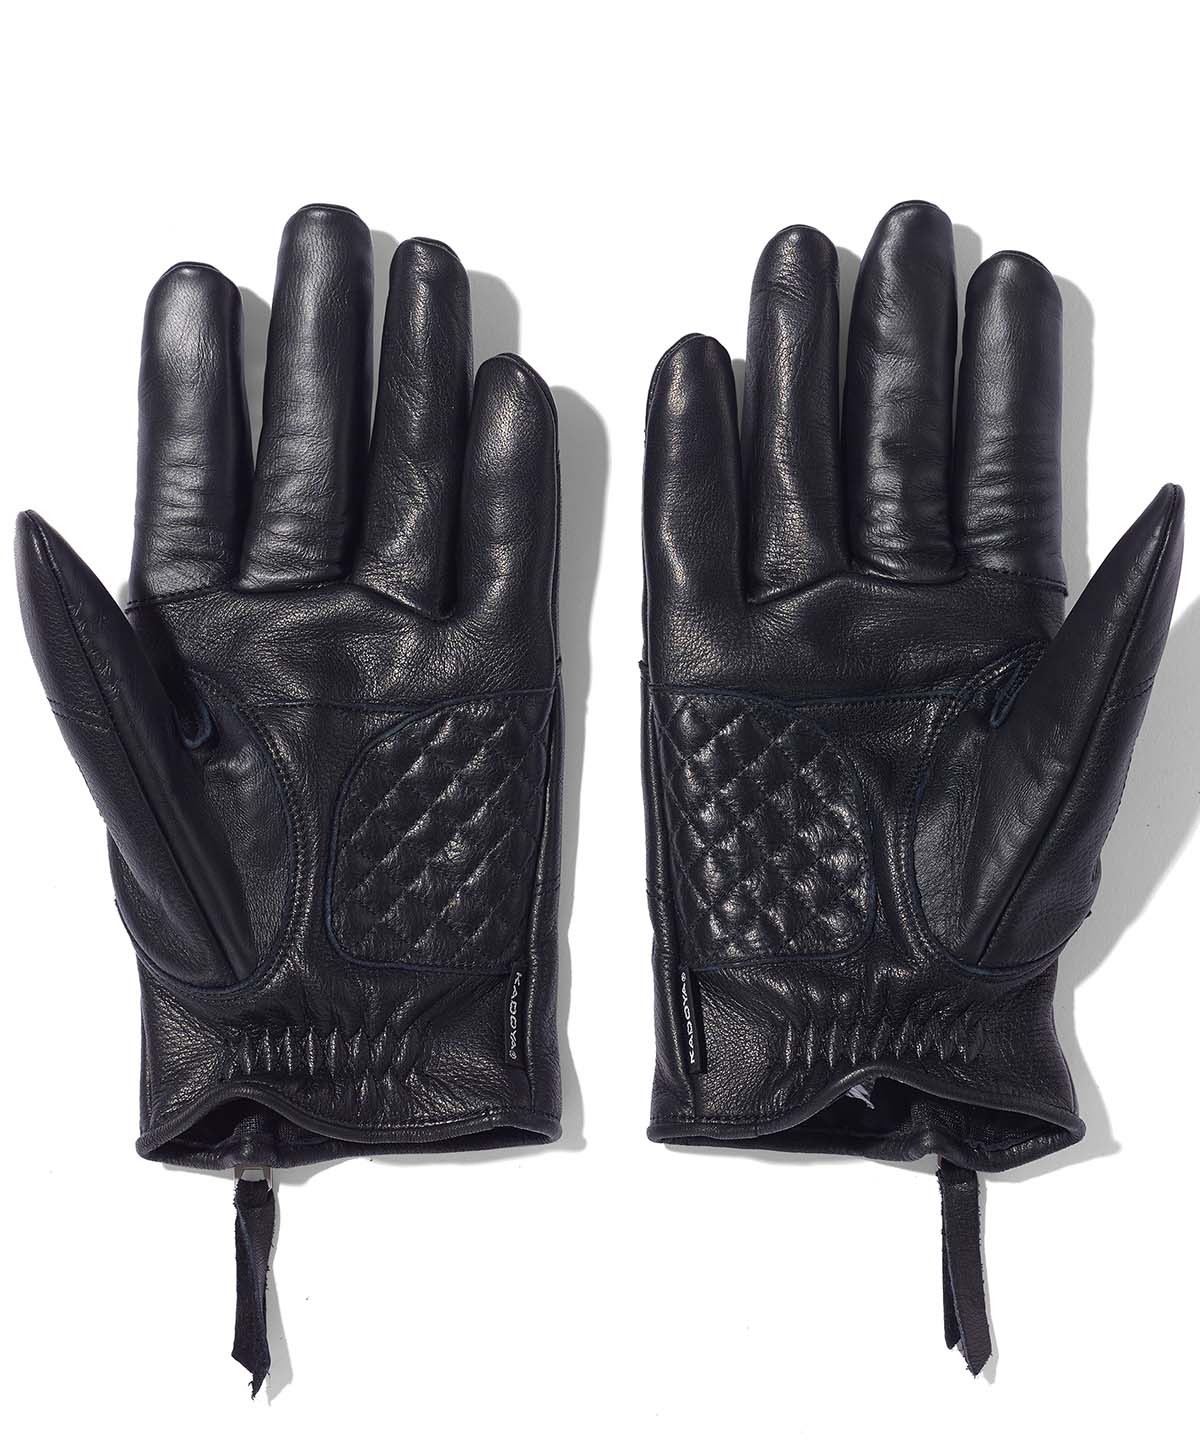 ROX Glove / Black